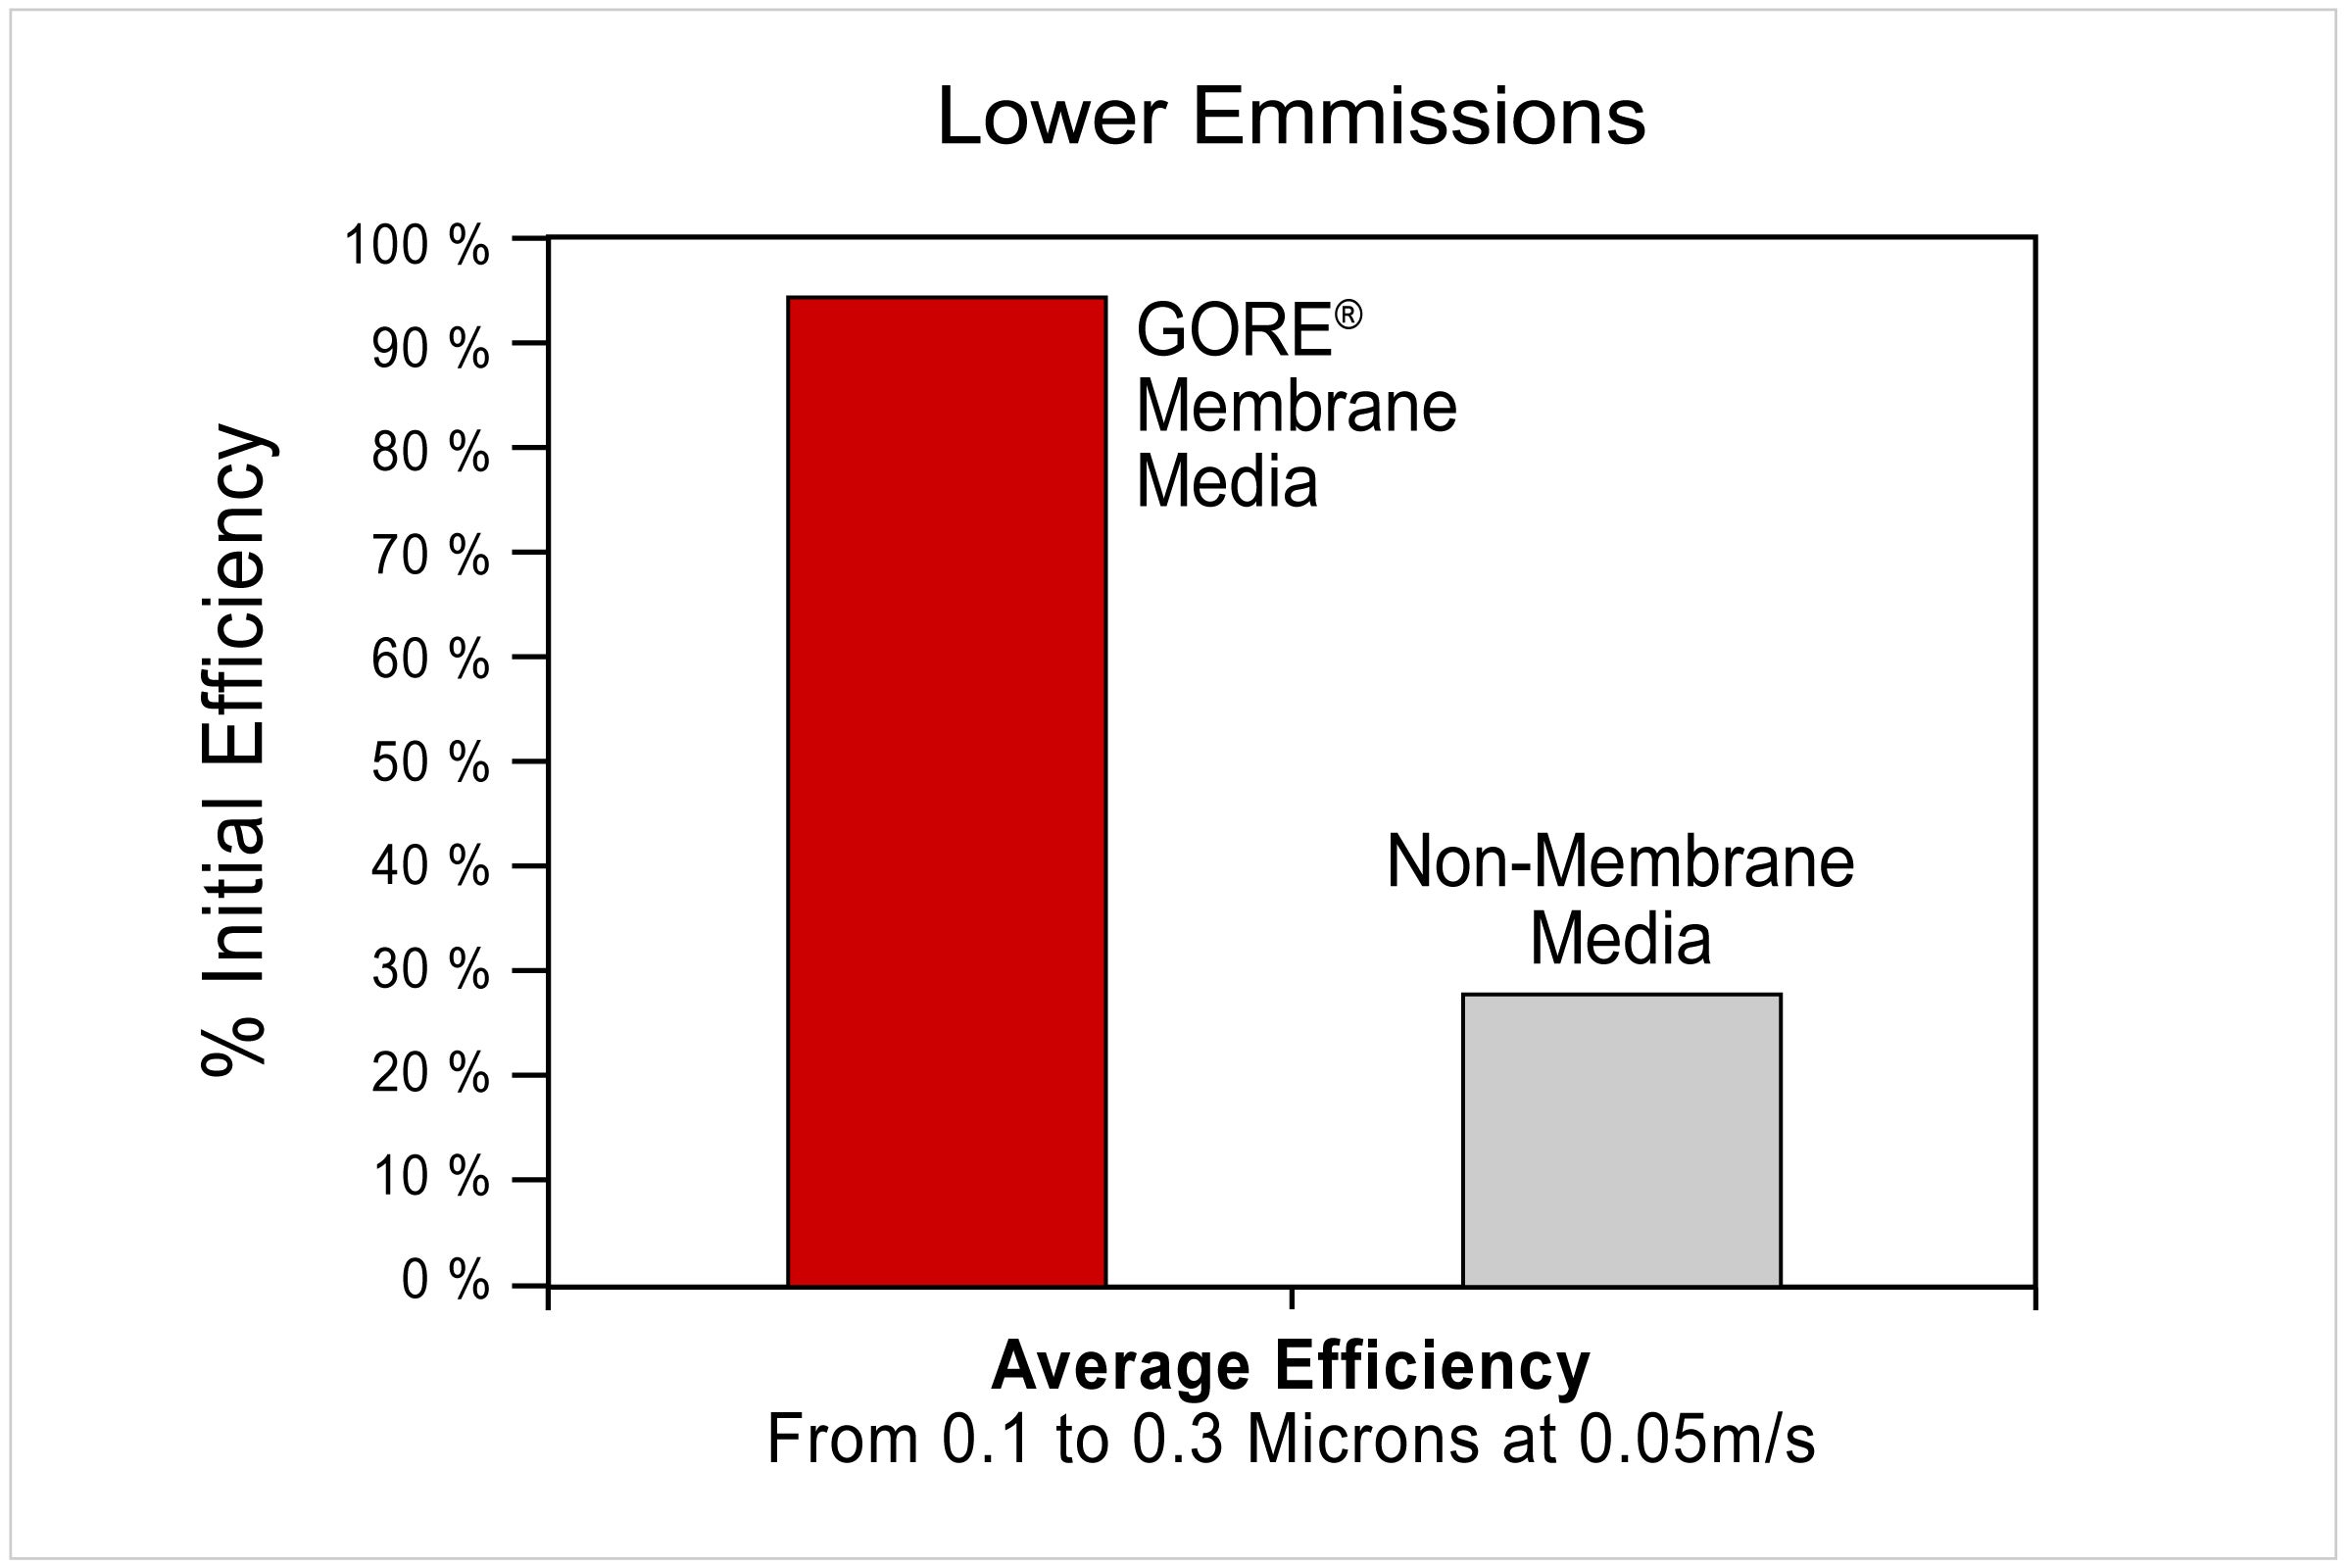 Lower Emissions